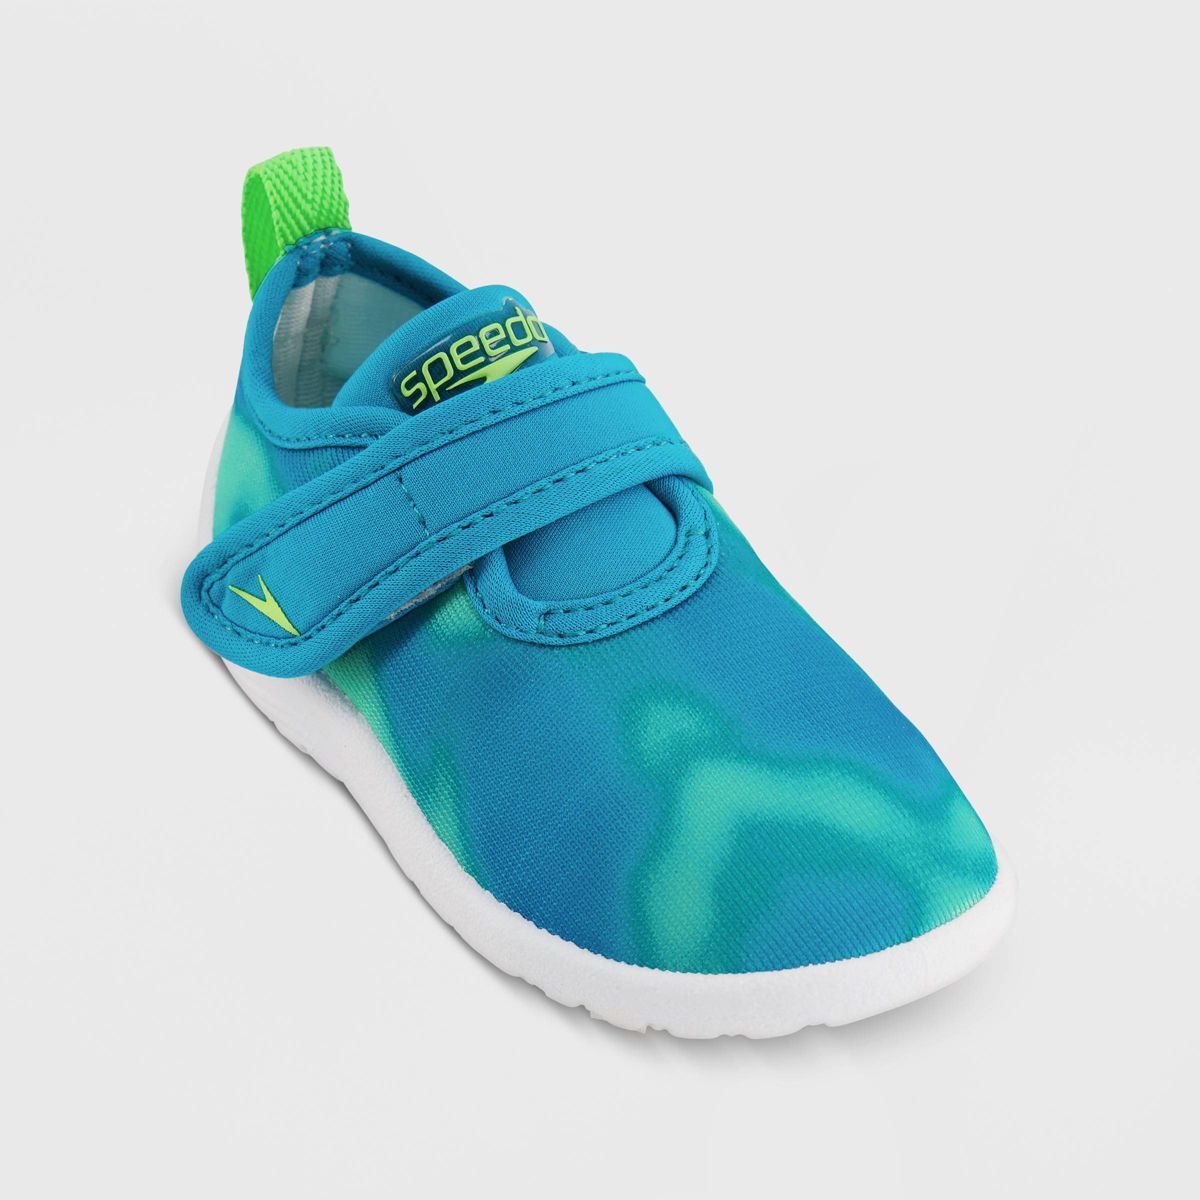 Speedo Toddler Printed Shore Explorer Water Shoes - Teal 5-6 | Target